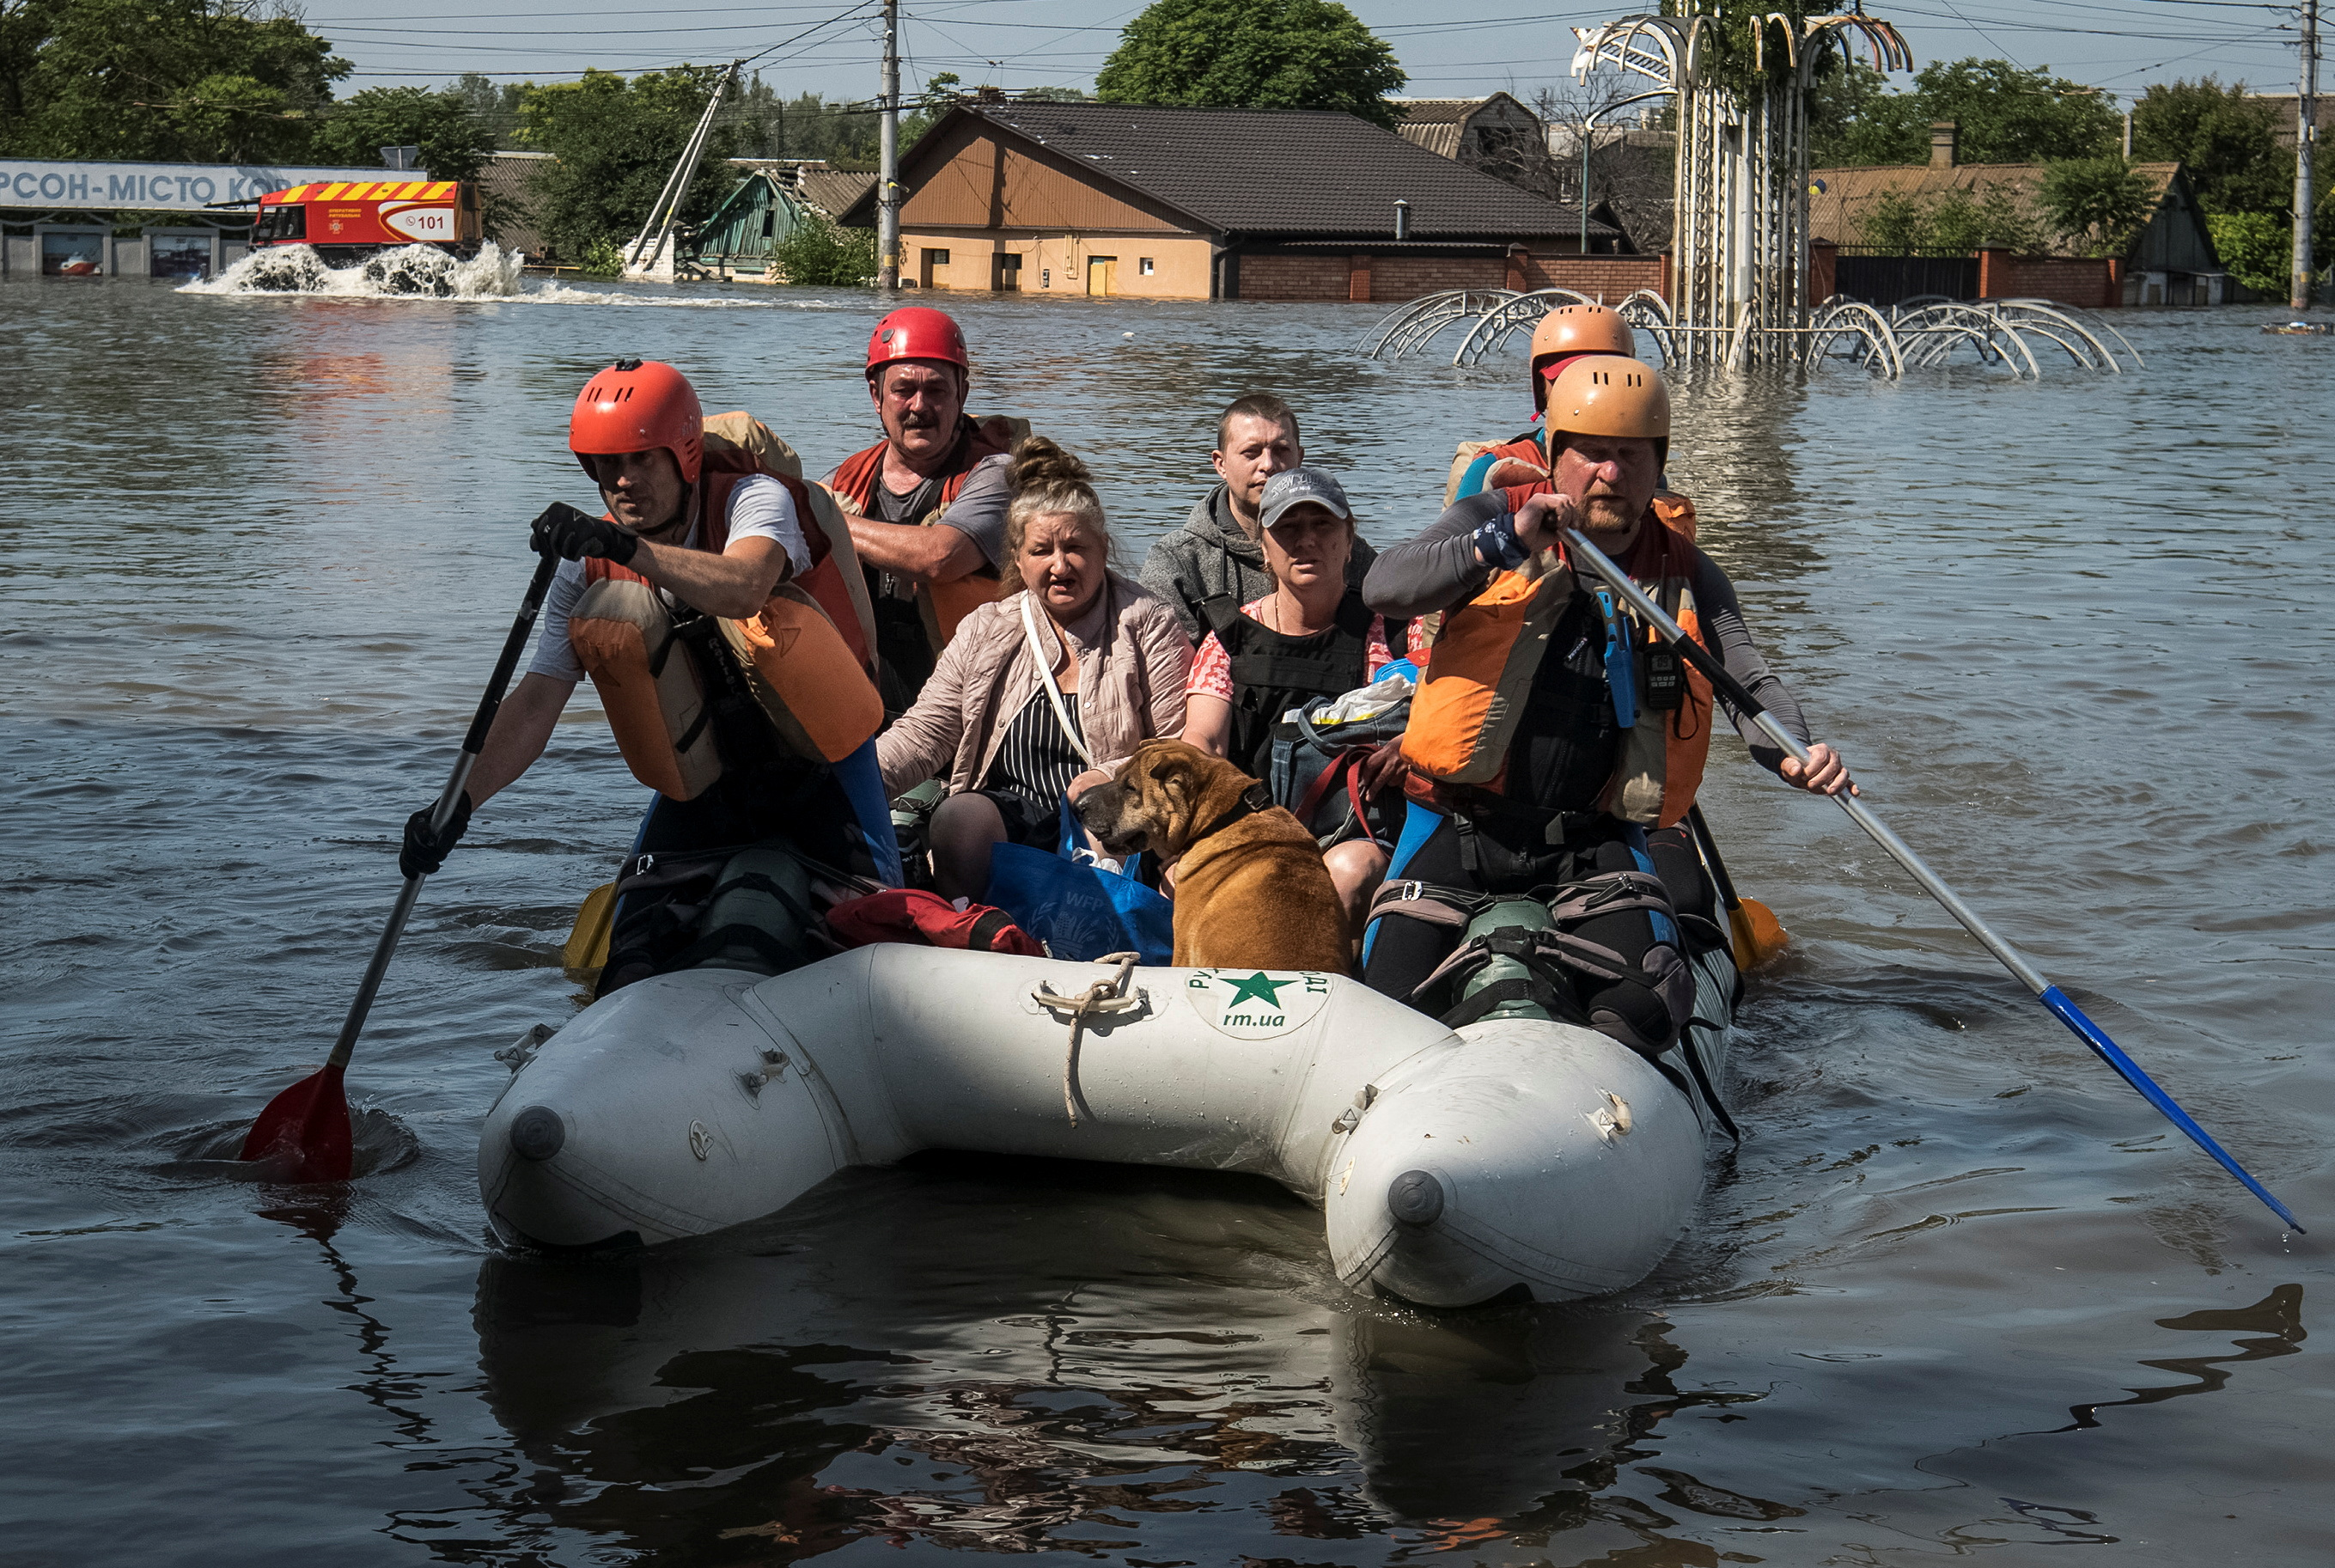 “Más de 40.000 personas podrían estar en zonas inundadas. Las autoridades ucranianas evacúan a más de 17.000 personas. Desgraciadamente, más de 25.000 civiles se encuentran en el territorio bajo control ruso”, indicó en Twitter el fiscal ucraniano Andrii Kostin.

